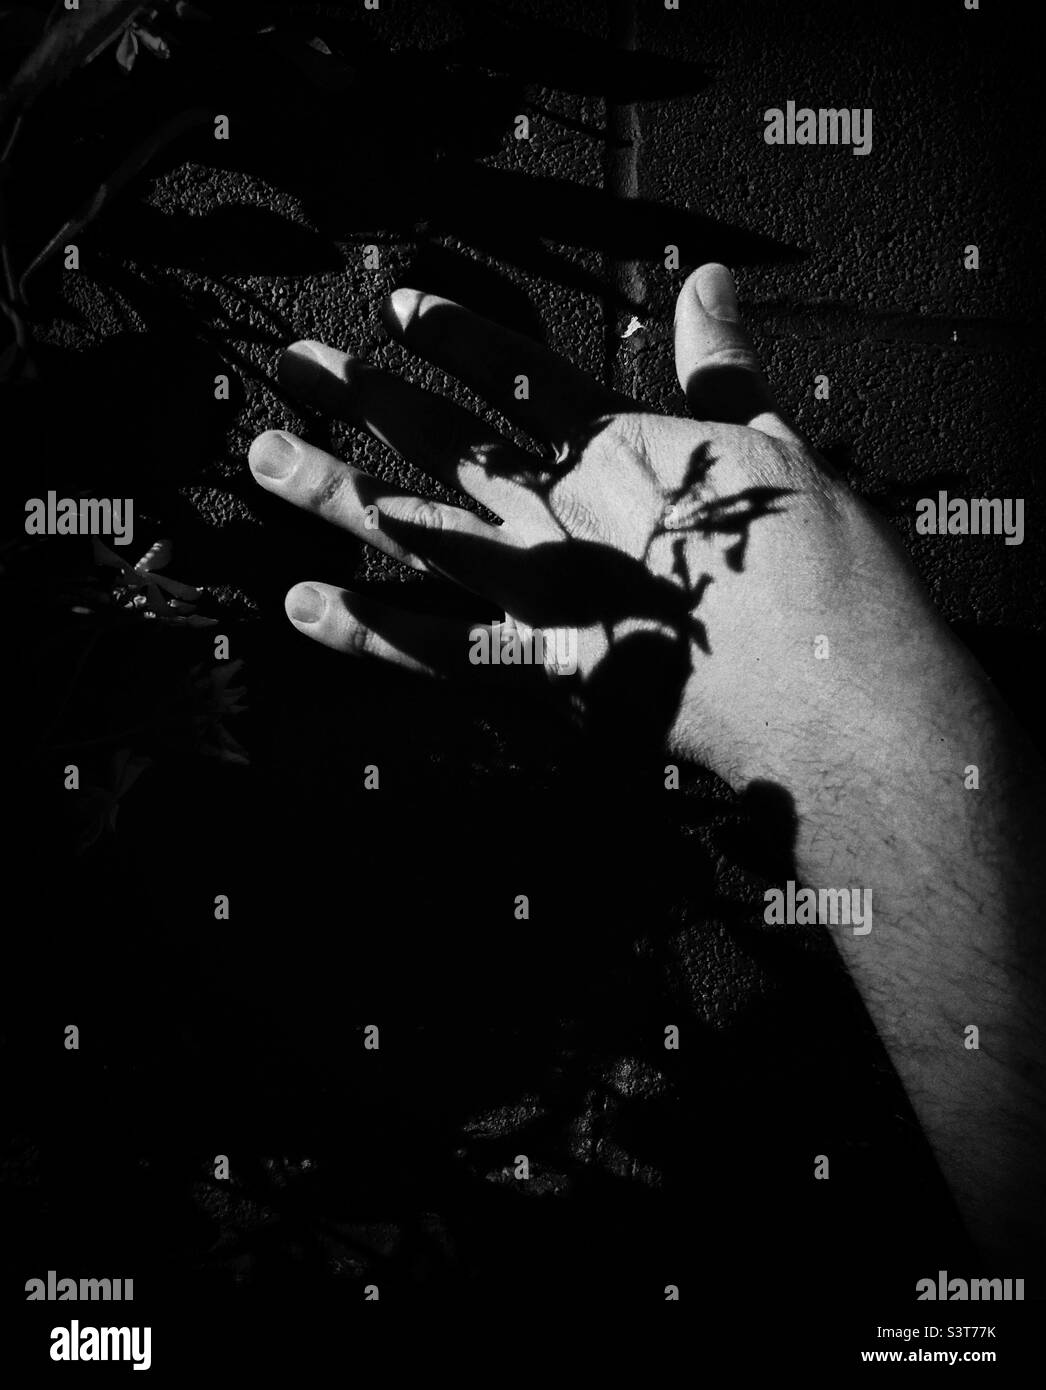 Kontrastreiche Schwarz-Weiß-Darstellung der Hand einer Person vor schwarzem Hintergrund Stockfoto